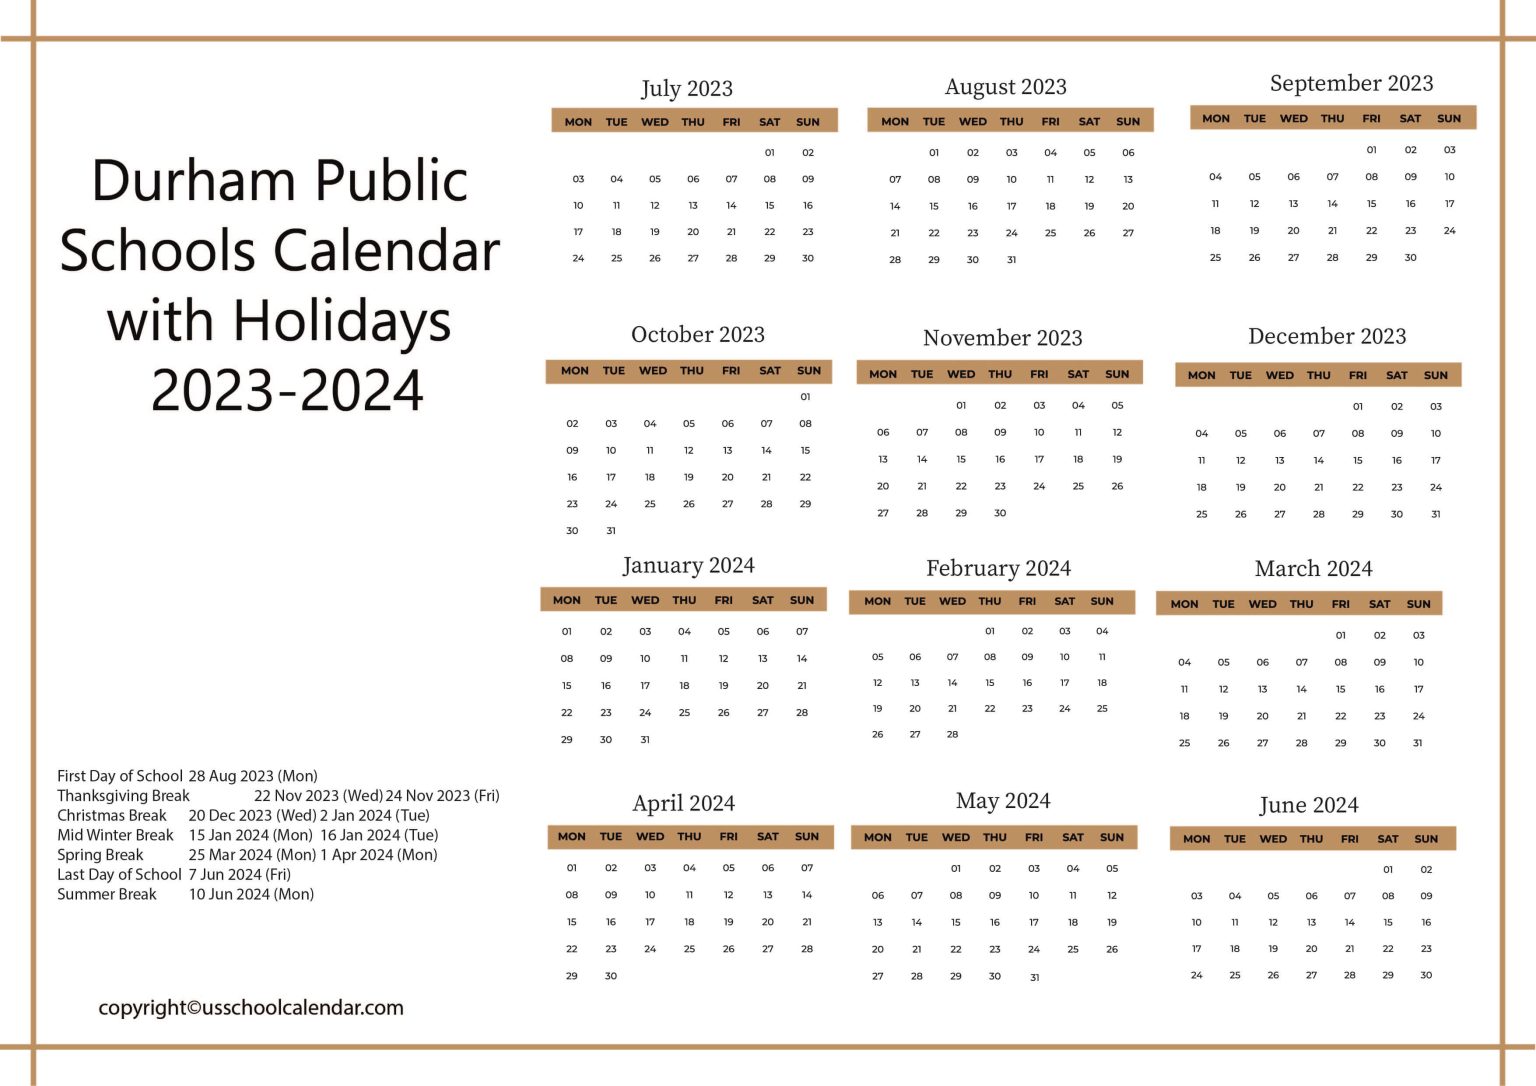 durham-public-schools-calendar-with-holidays-2023-2024